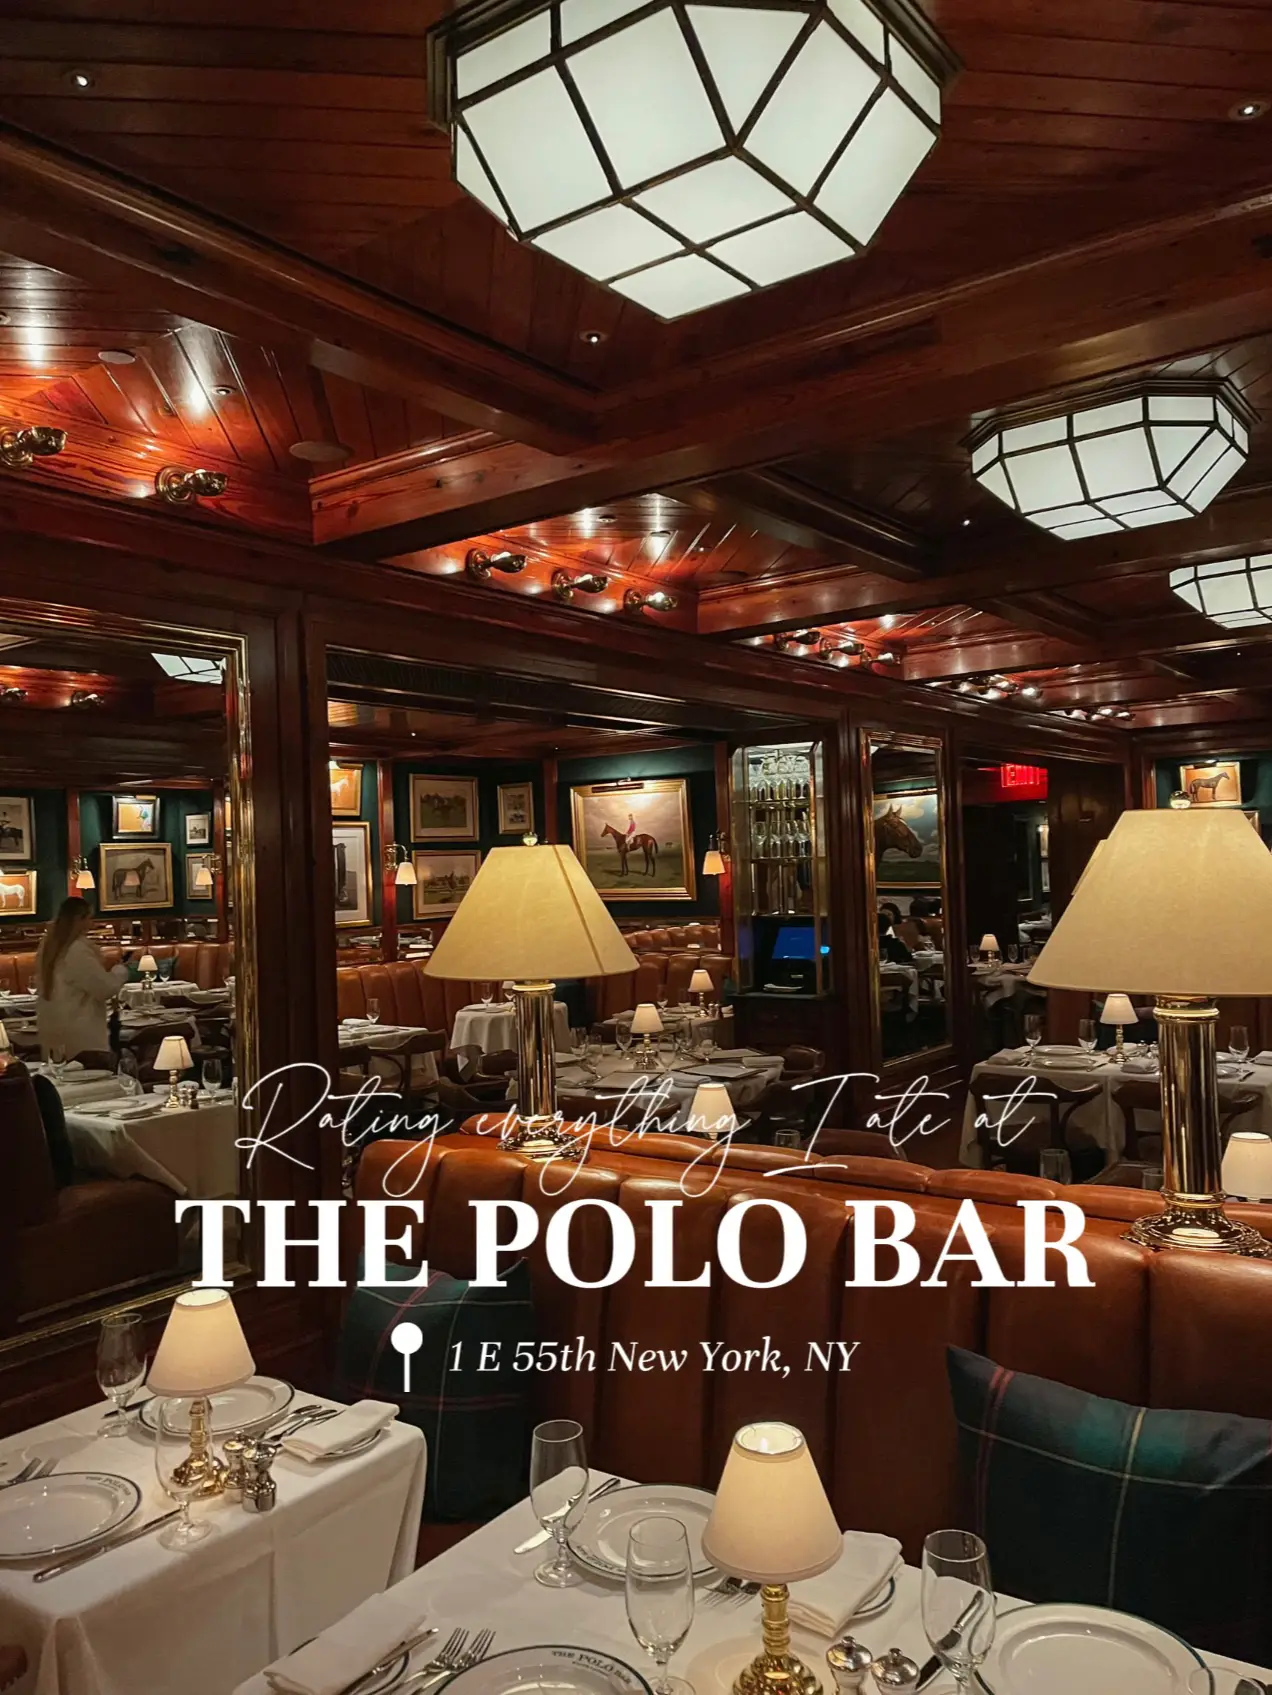 The Polo Bar Restaurant - New York, NY